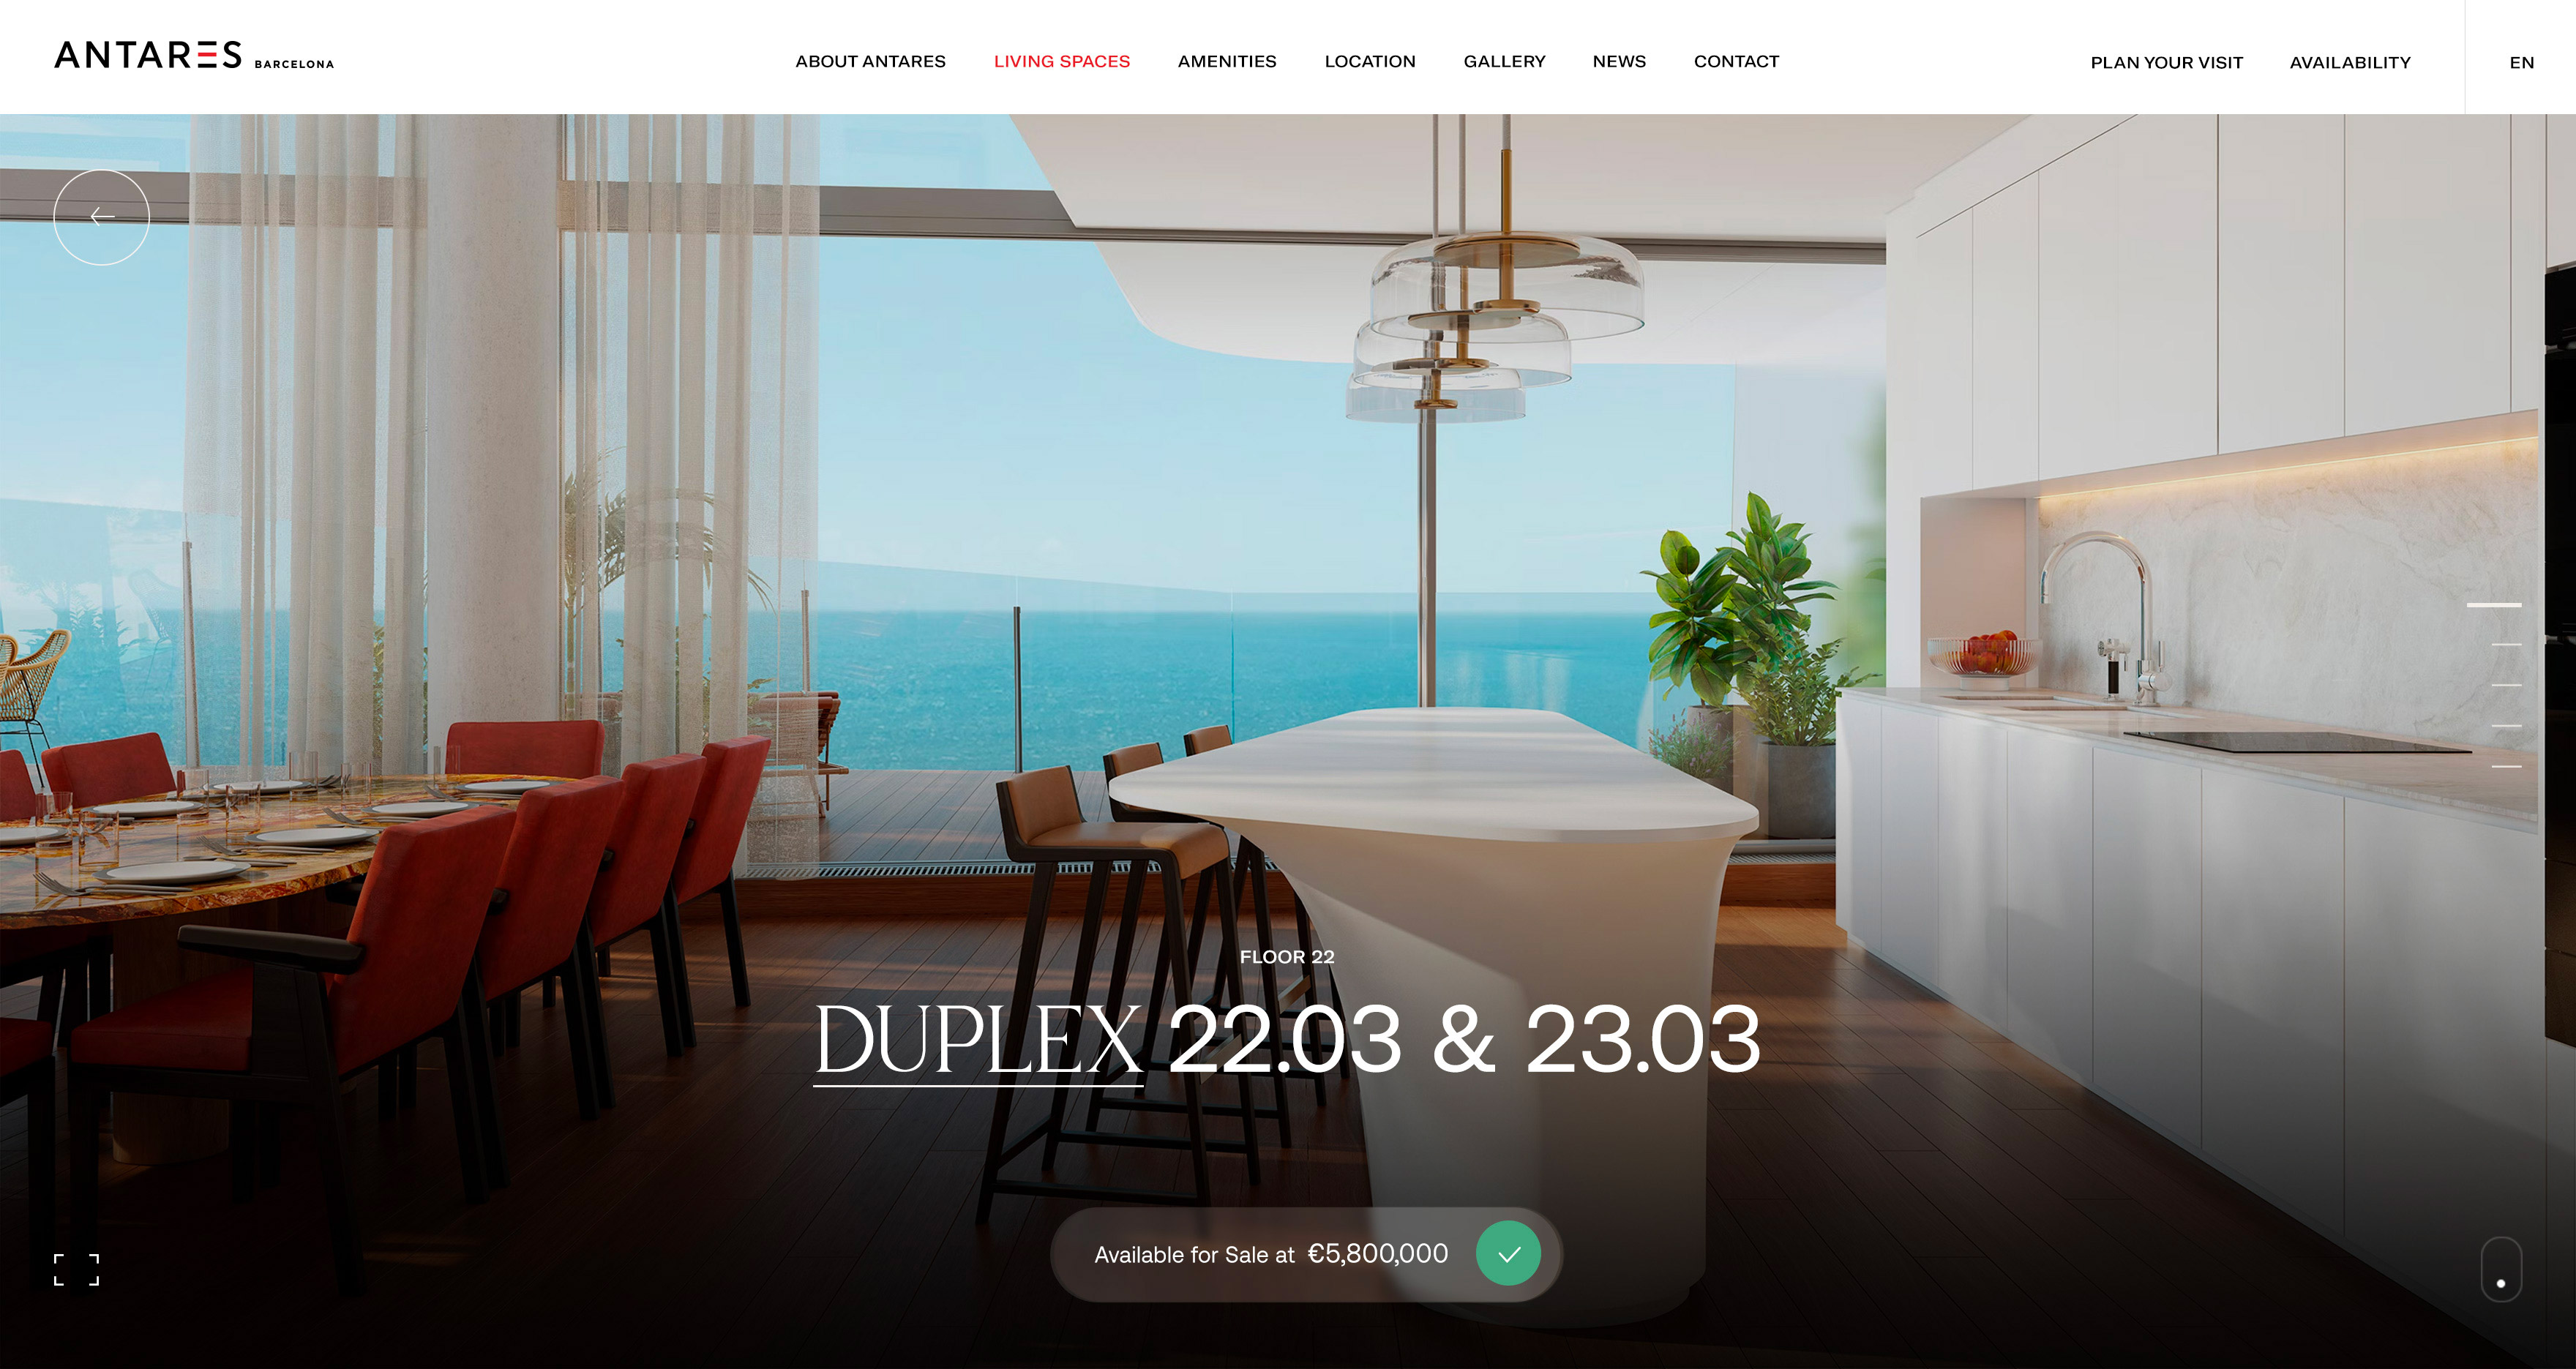 antares barcelona website design duplex kommigraphics